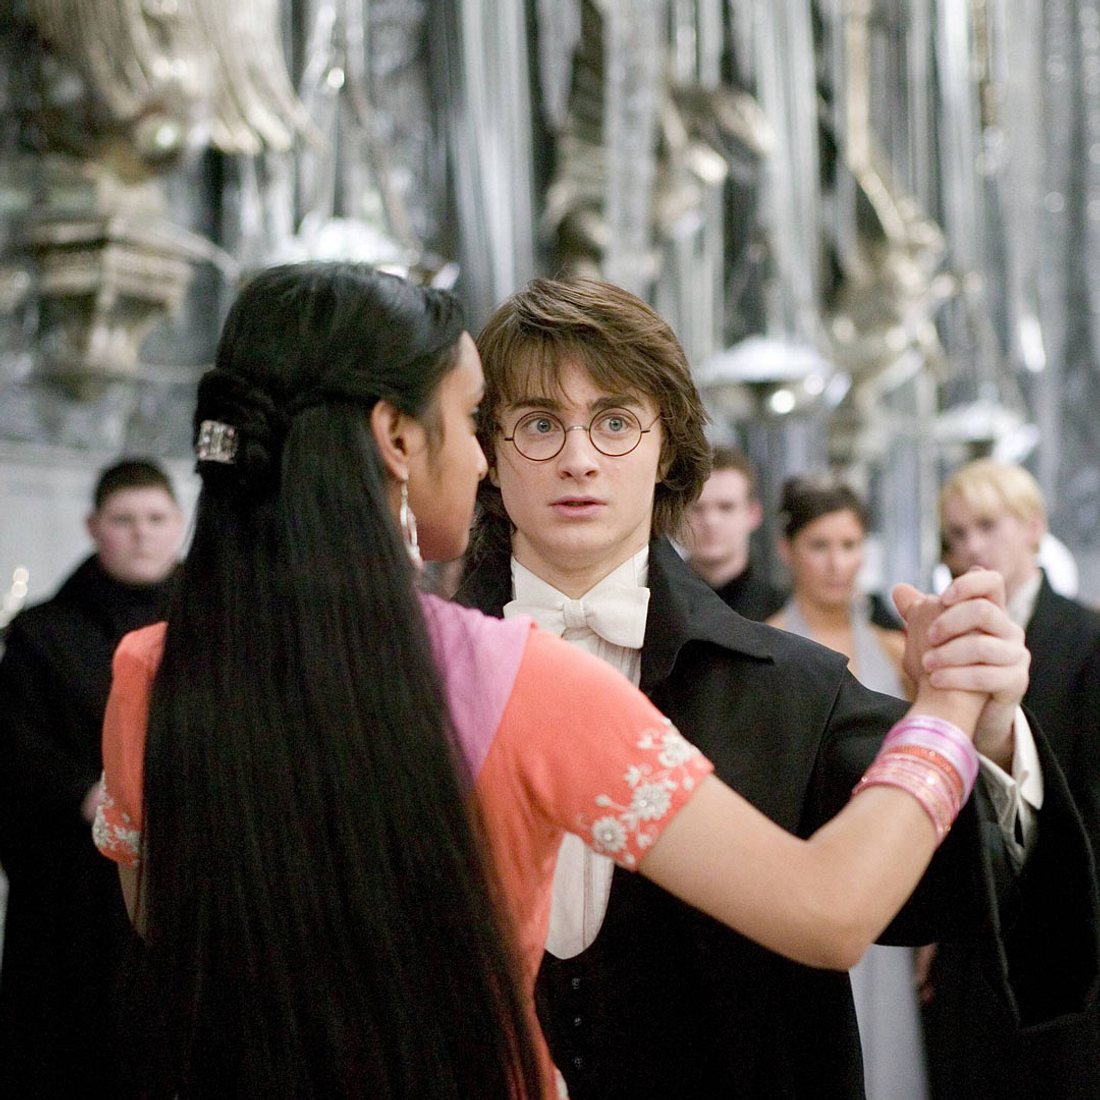 Harry Potter-Geheimnisse: Das haben Fans bei Daniel Radcliffe nie gesehen!